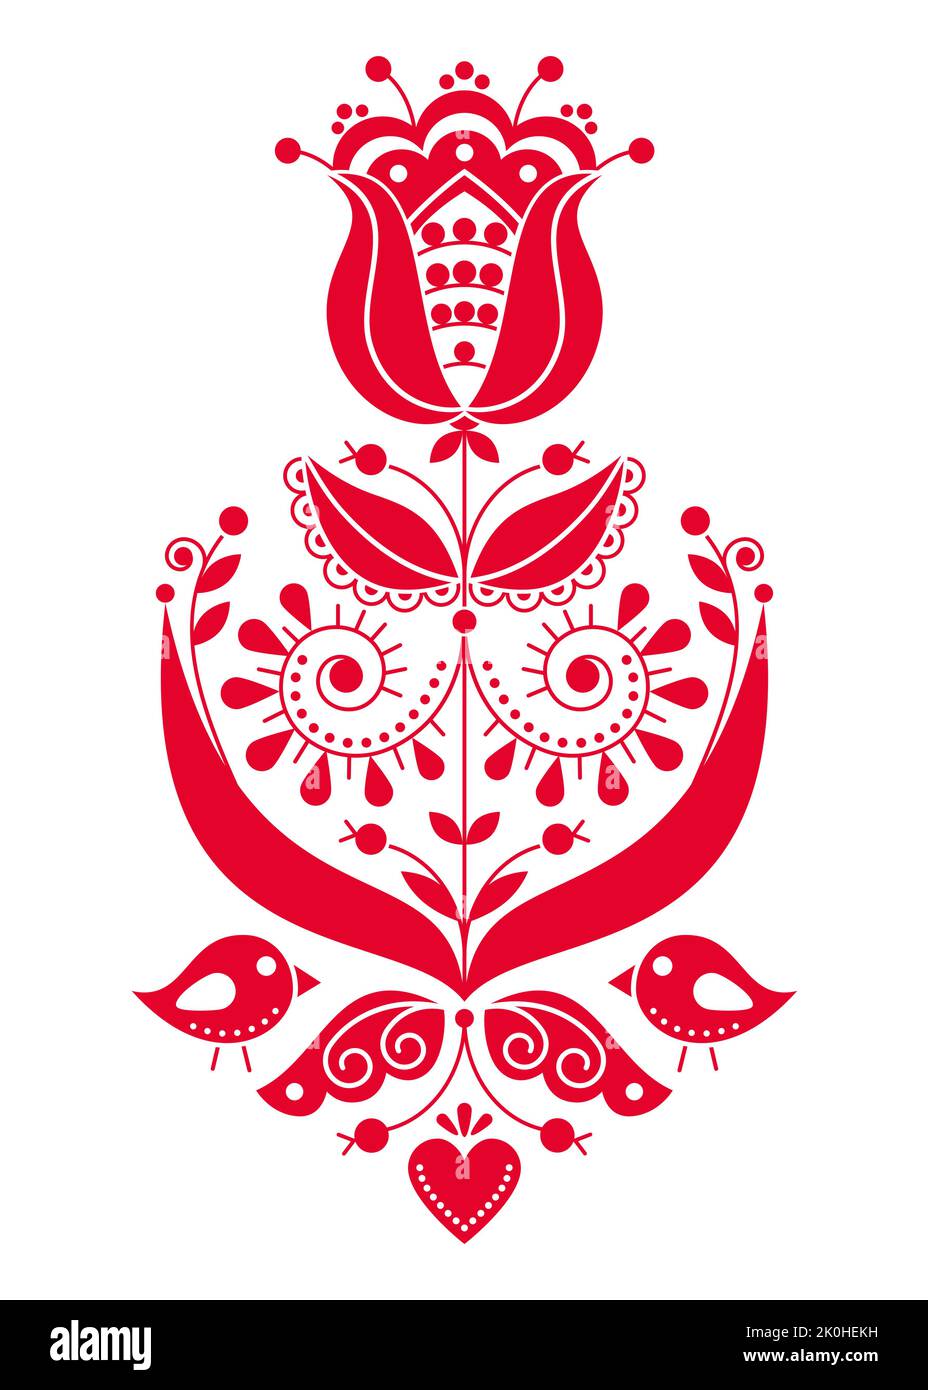 Valentinstag skandinavische Volkskunst Vektor roten Grußkarte Design mit Blumen und Vögel, Retro Natur Muster inspiriert von der traditionellen Sticken Stock Vektor